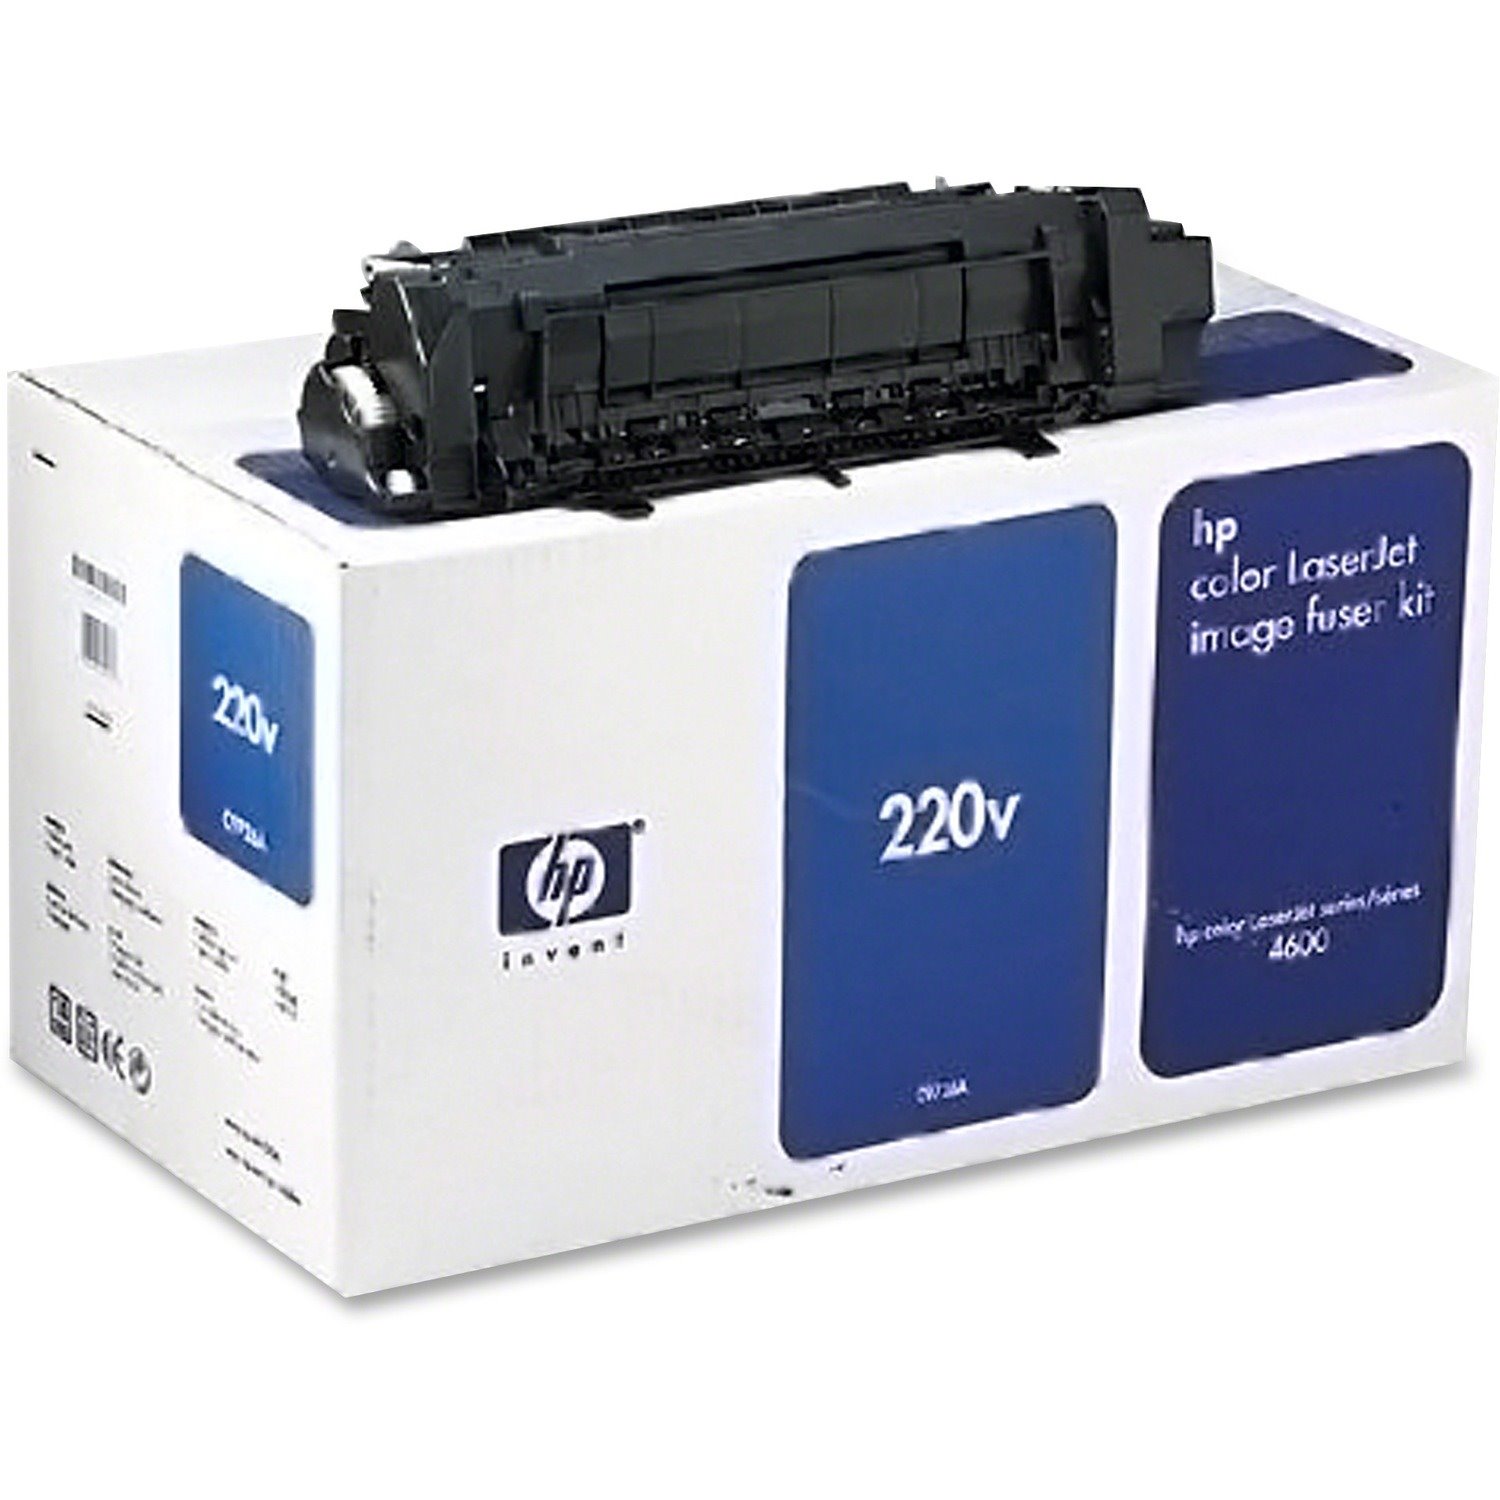 HP Color LaserJet C9726A 220V Image Fuser Kit